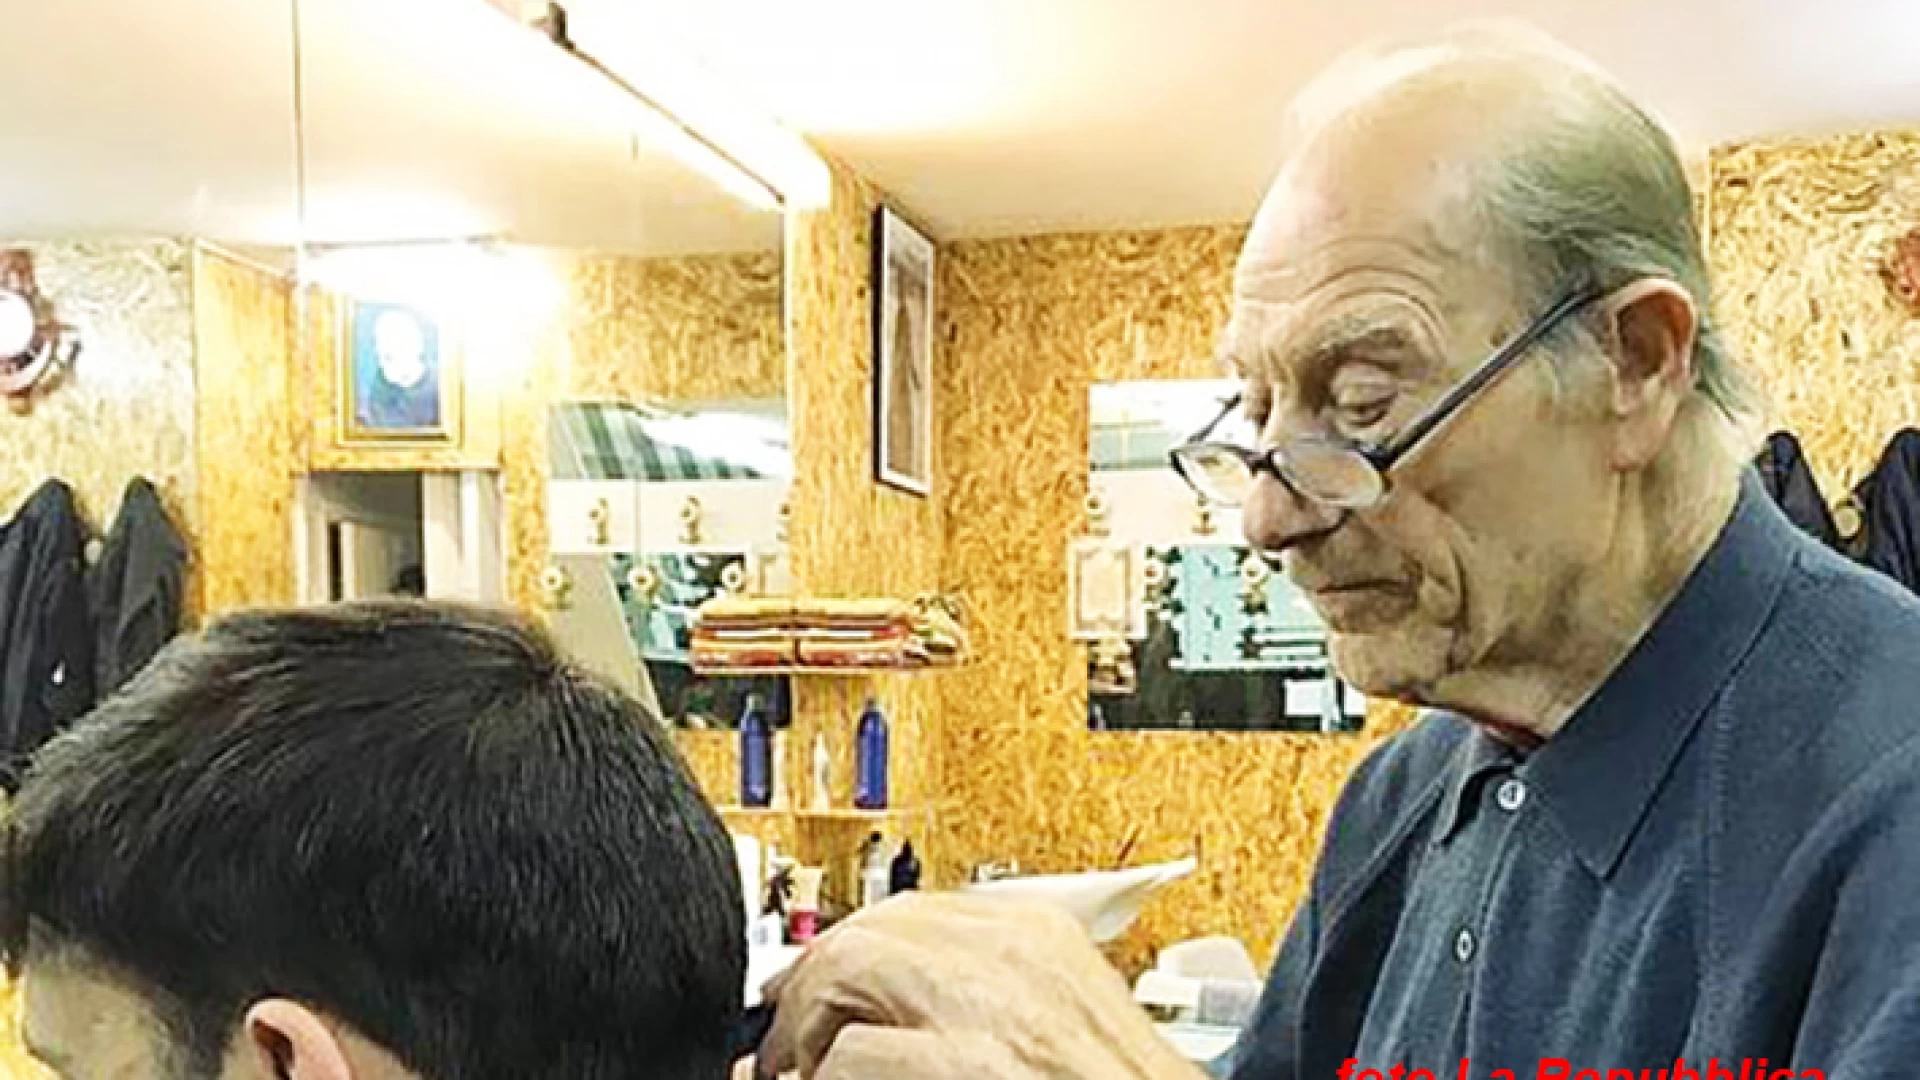 Si laurea in legge ad 84 anni. L’incredibile storia di Giuseppe Paventi che da Toro ha fatto fortuna Roma facendo il barbiere.